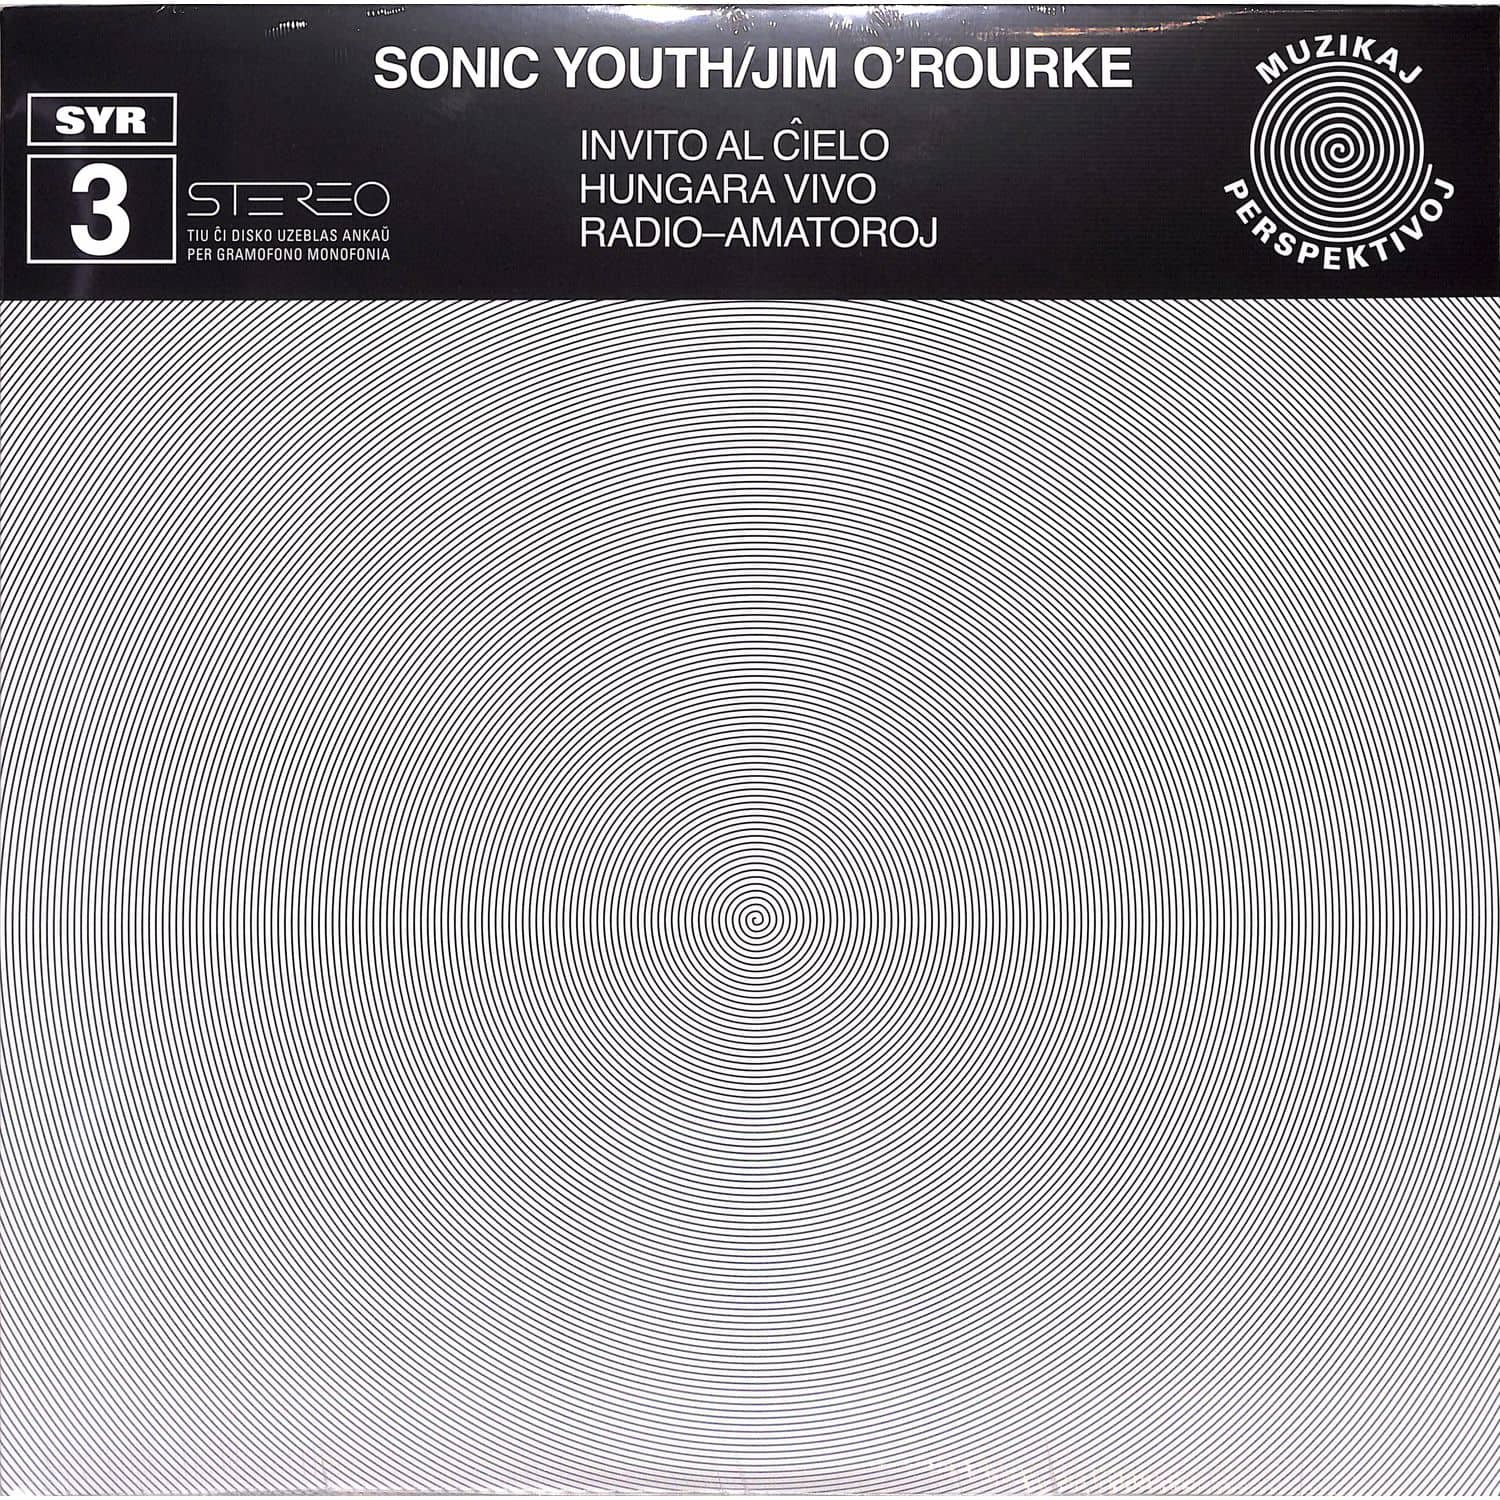 Sonic Youth with Jim O Rourke - INVITO AL CIELO 